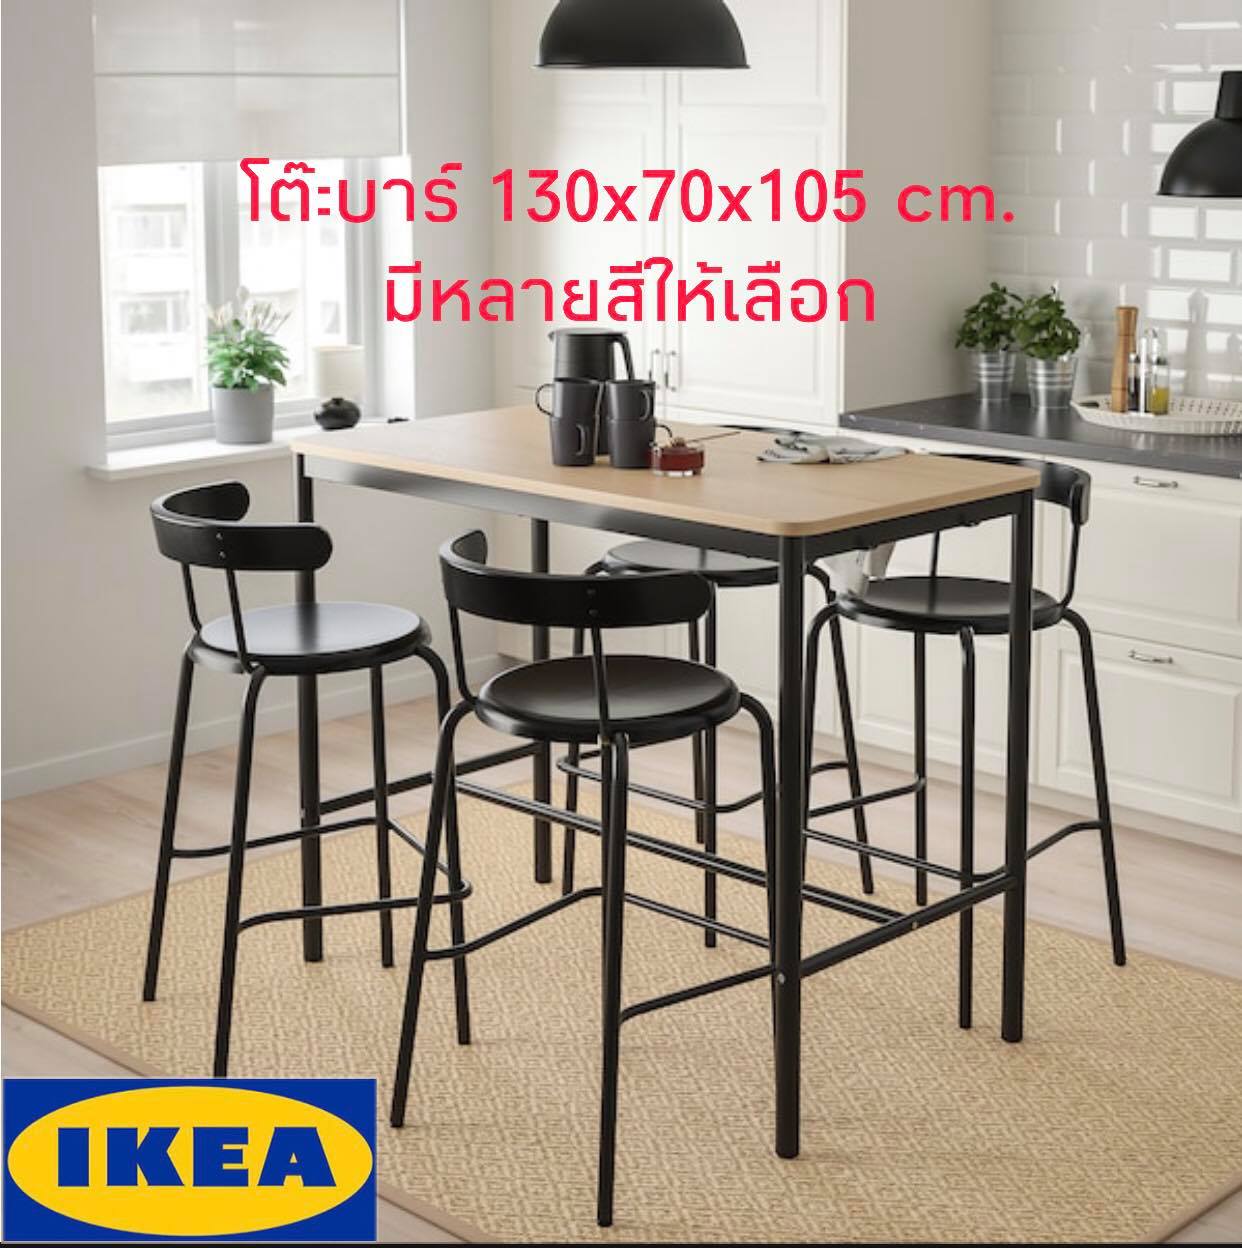 IKEA ของแท้ TOMMARYD ทอมมารึด โต๊ะ,โต๊ะบาร์,โต๊ะทำงาน 4 ที่นั่ง 130x70x105 ซม.***มีหลายสีให้เลือก***